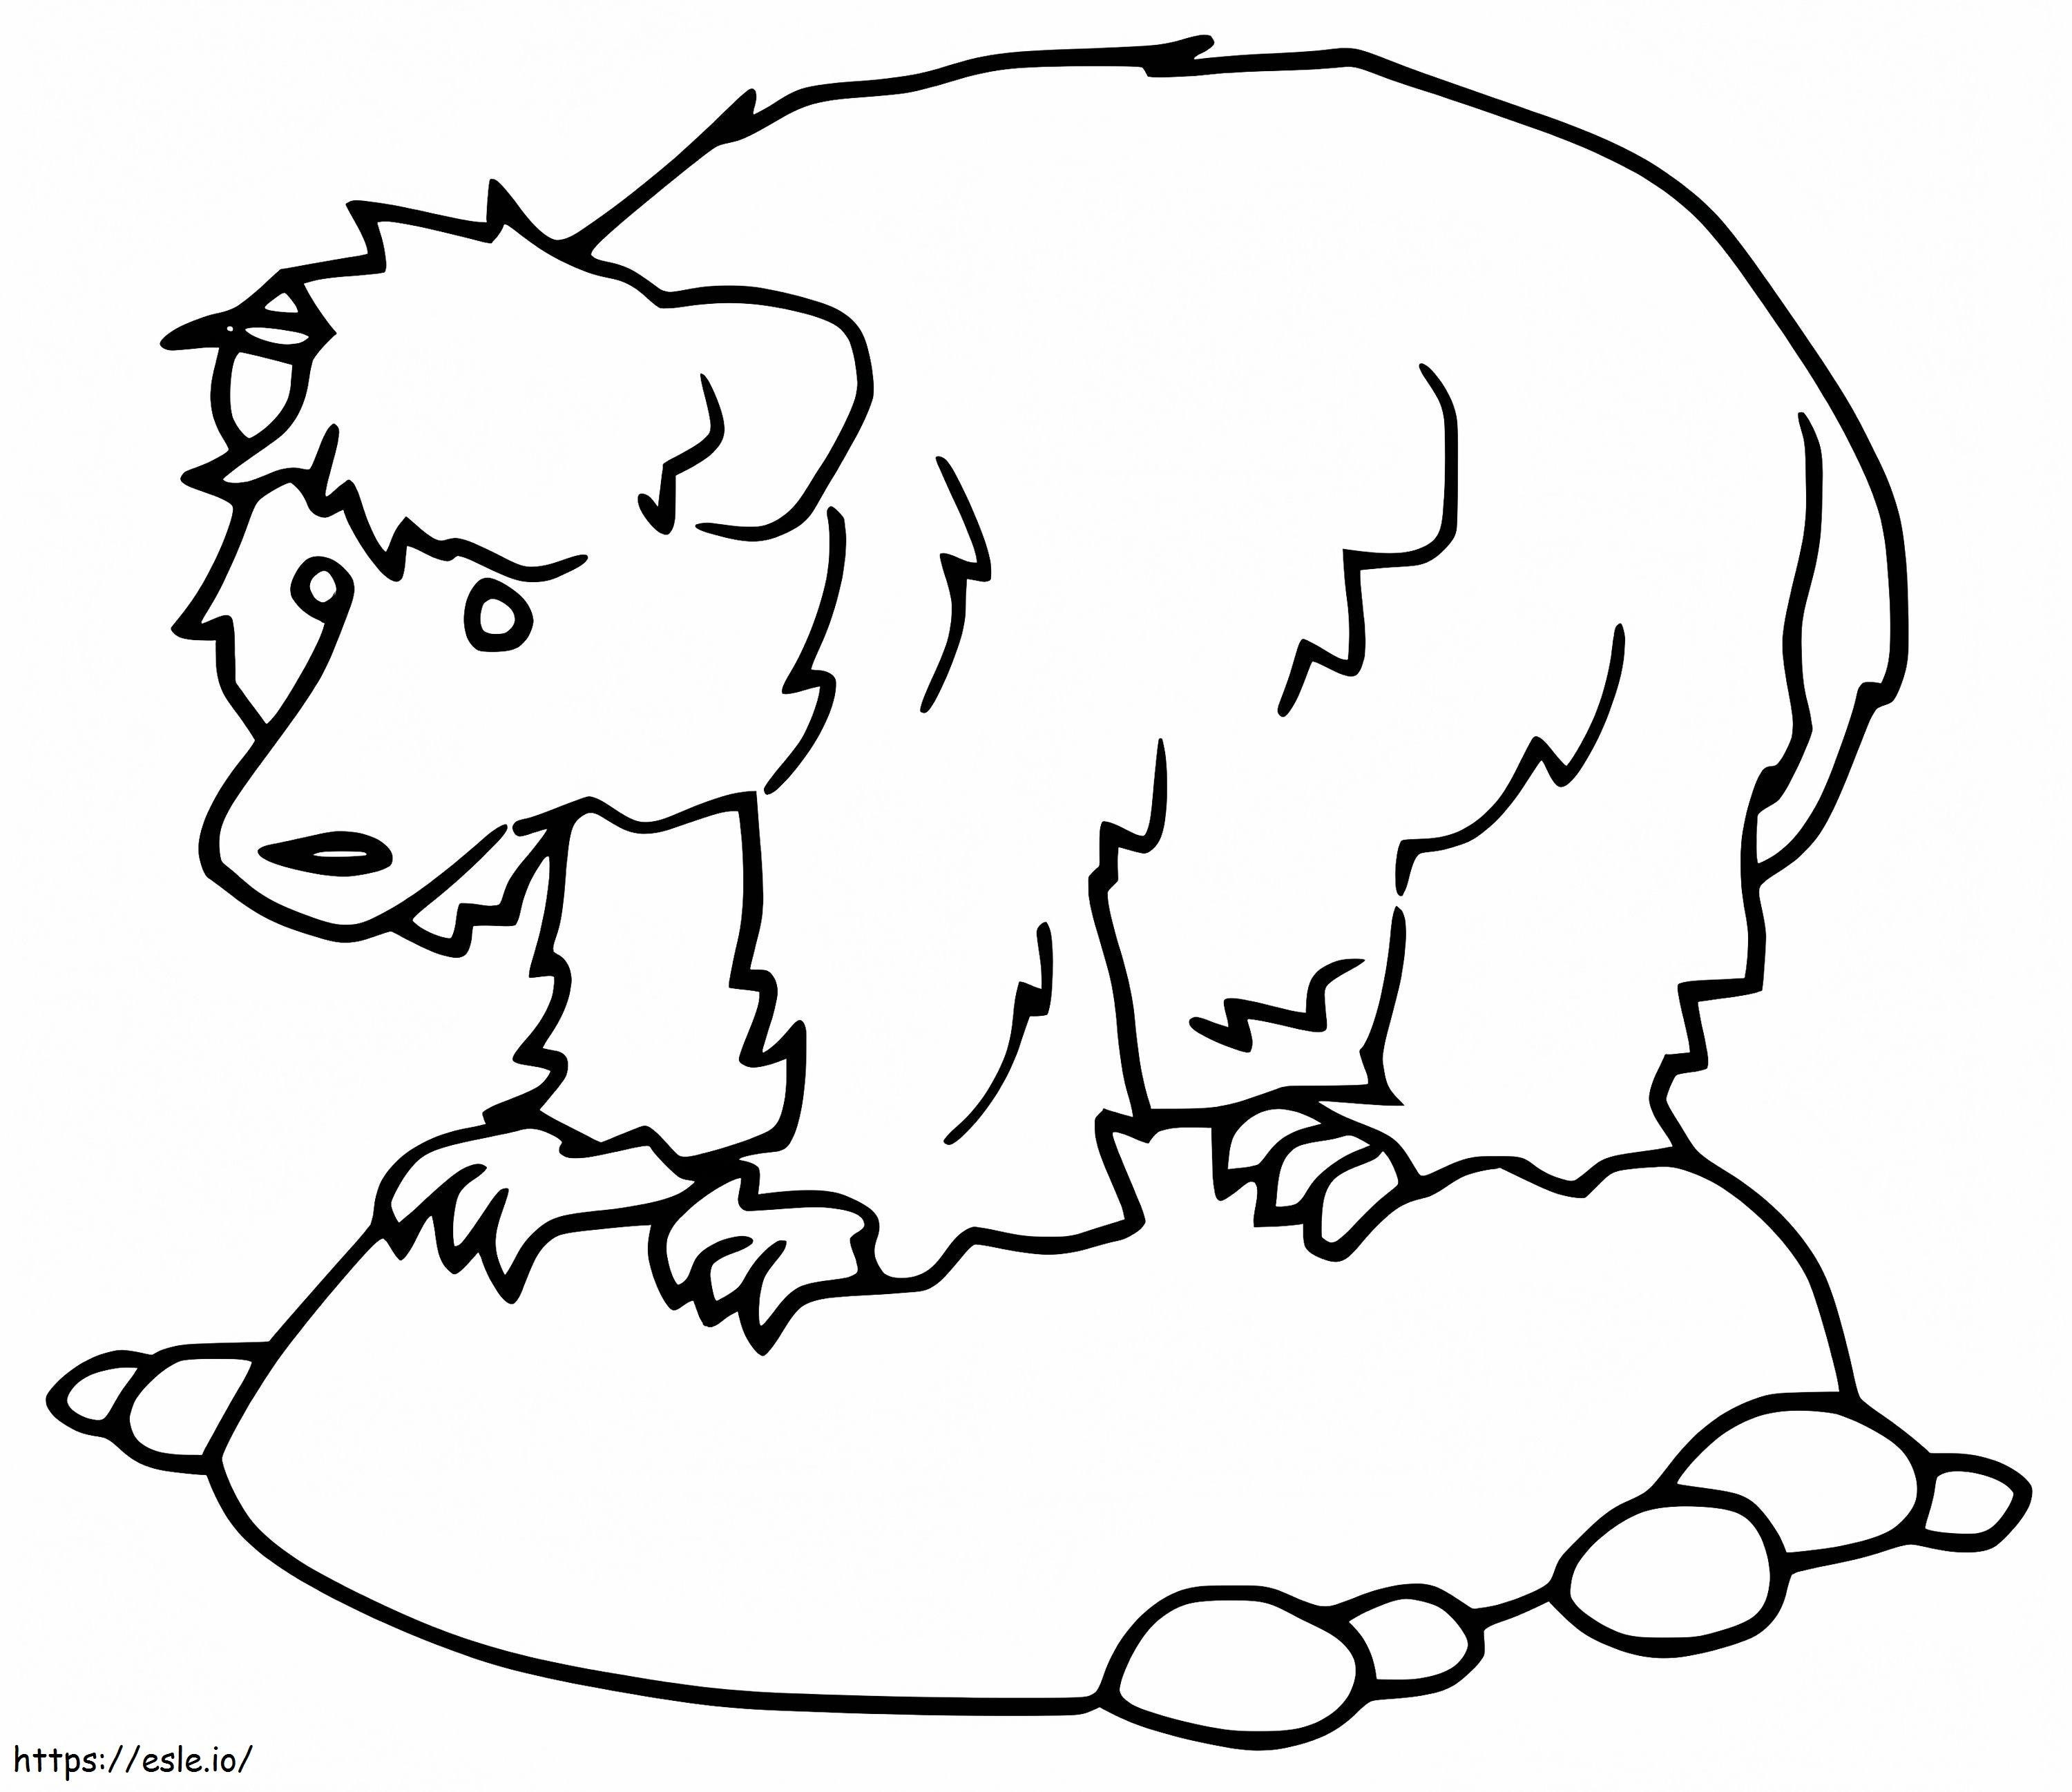 Ursul leneș ușor de colorat